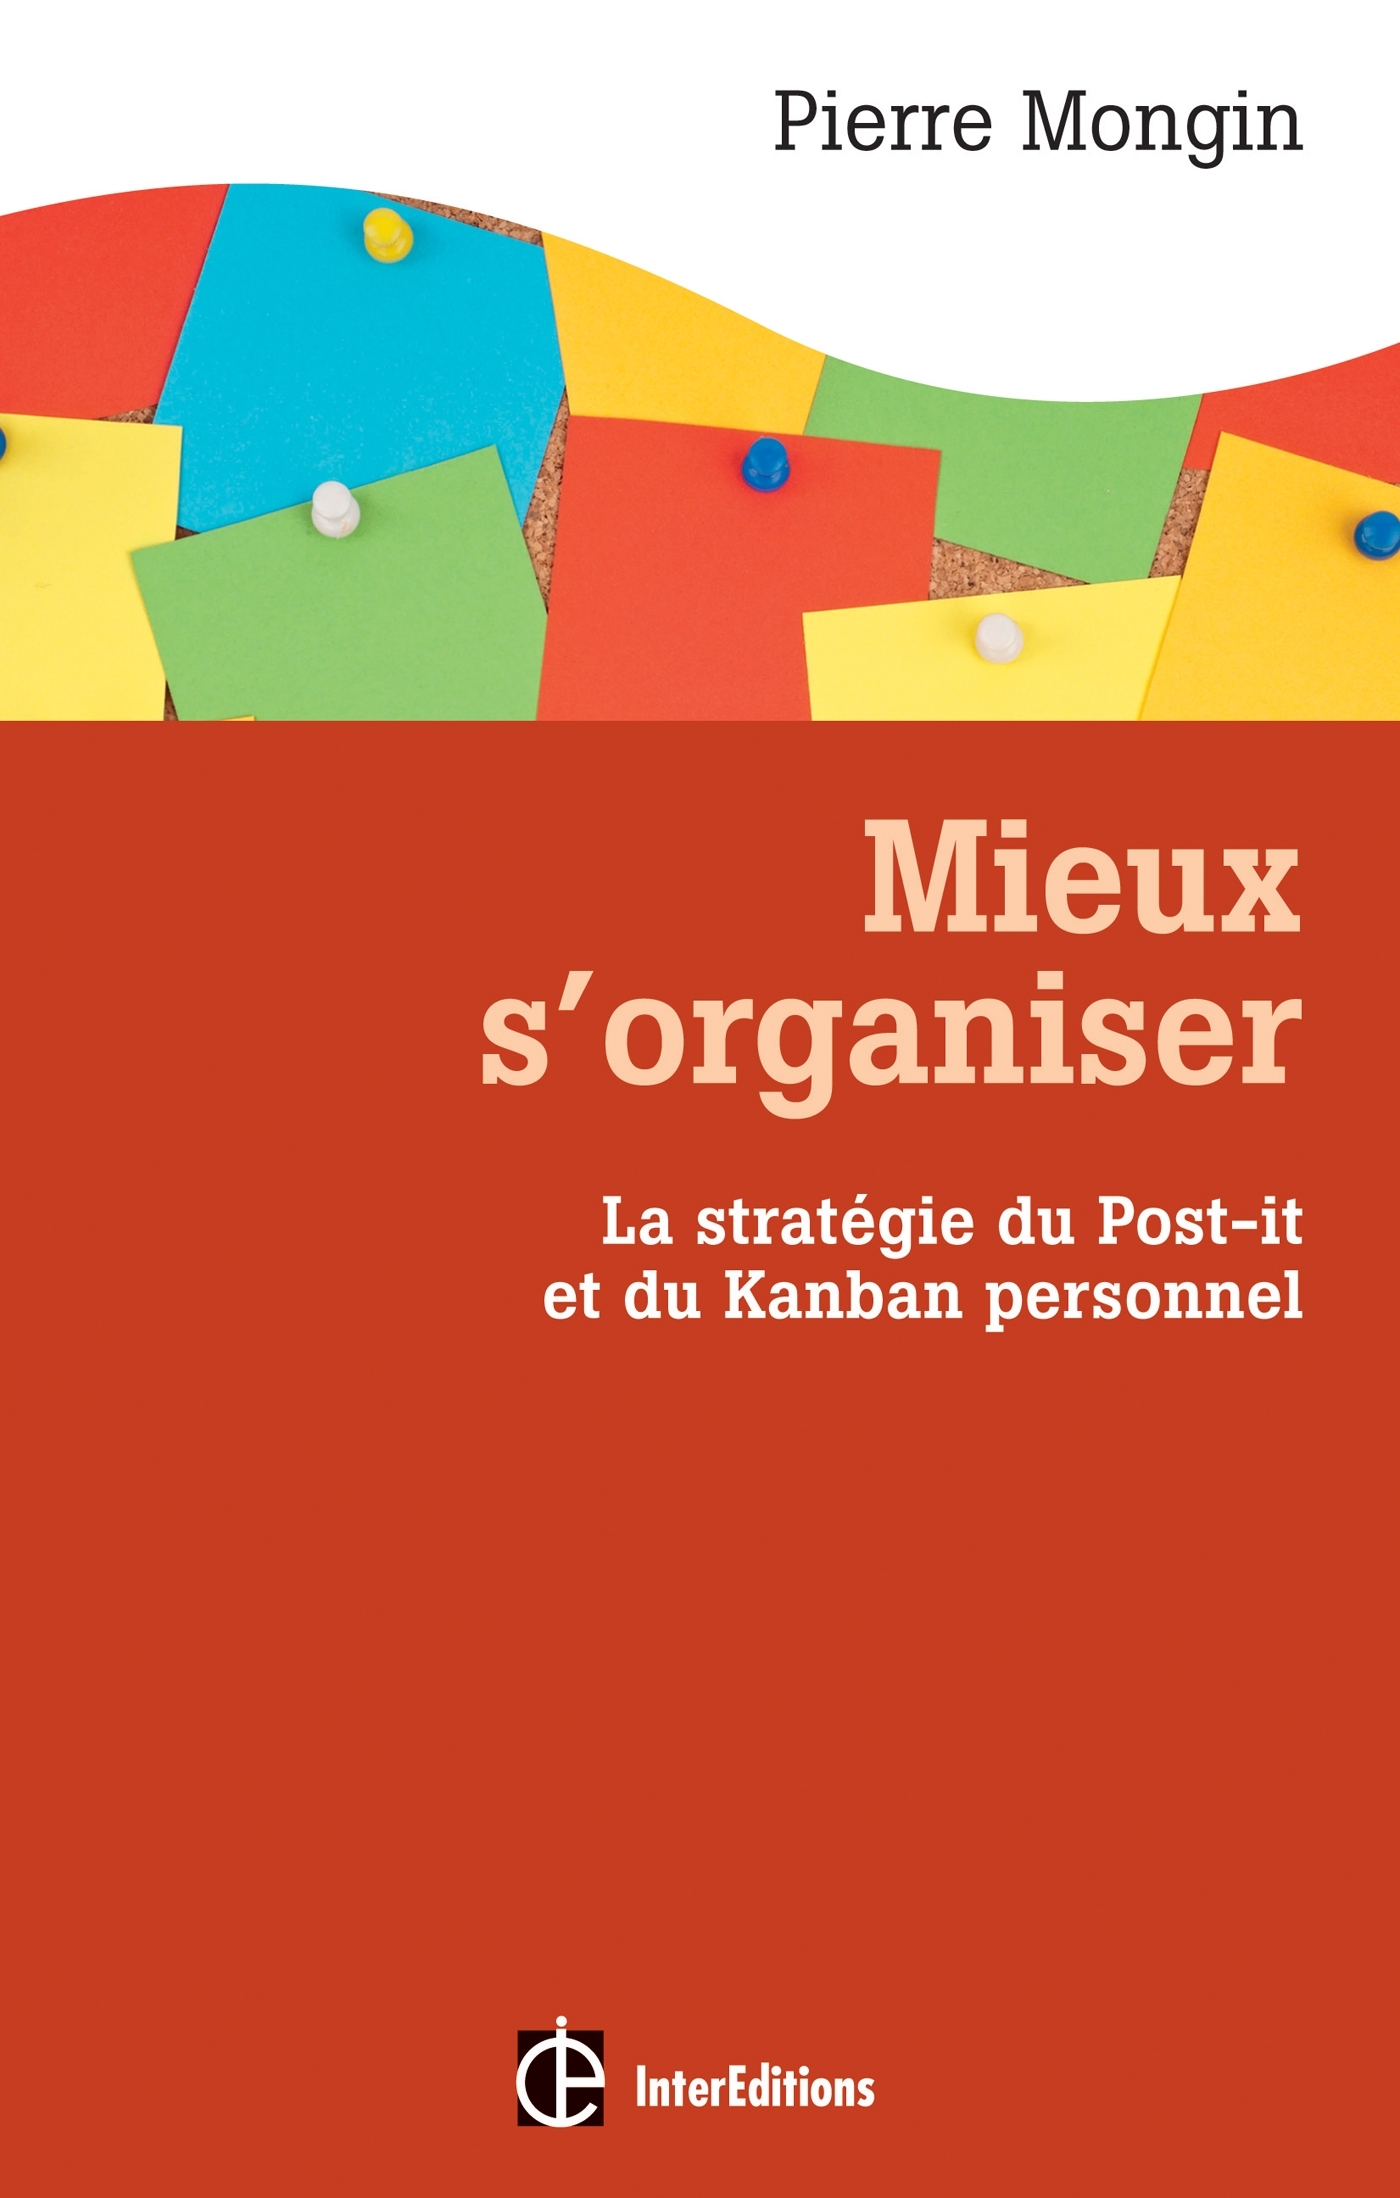 Mieux s'organiser - La stratégie du Post-it® et du Kanban personnel - Livre  et ebook Santé et bien-être de Pierre Mongin - Dunod